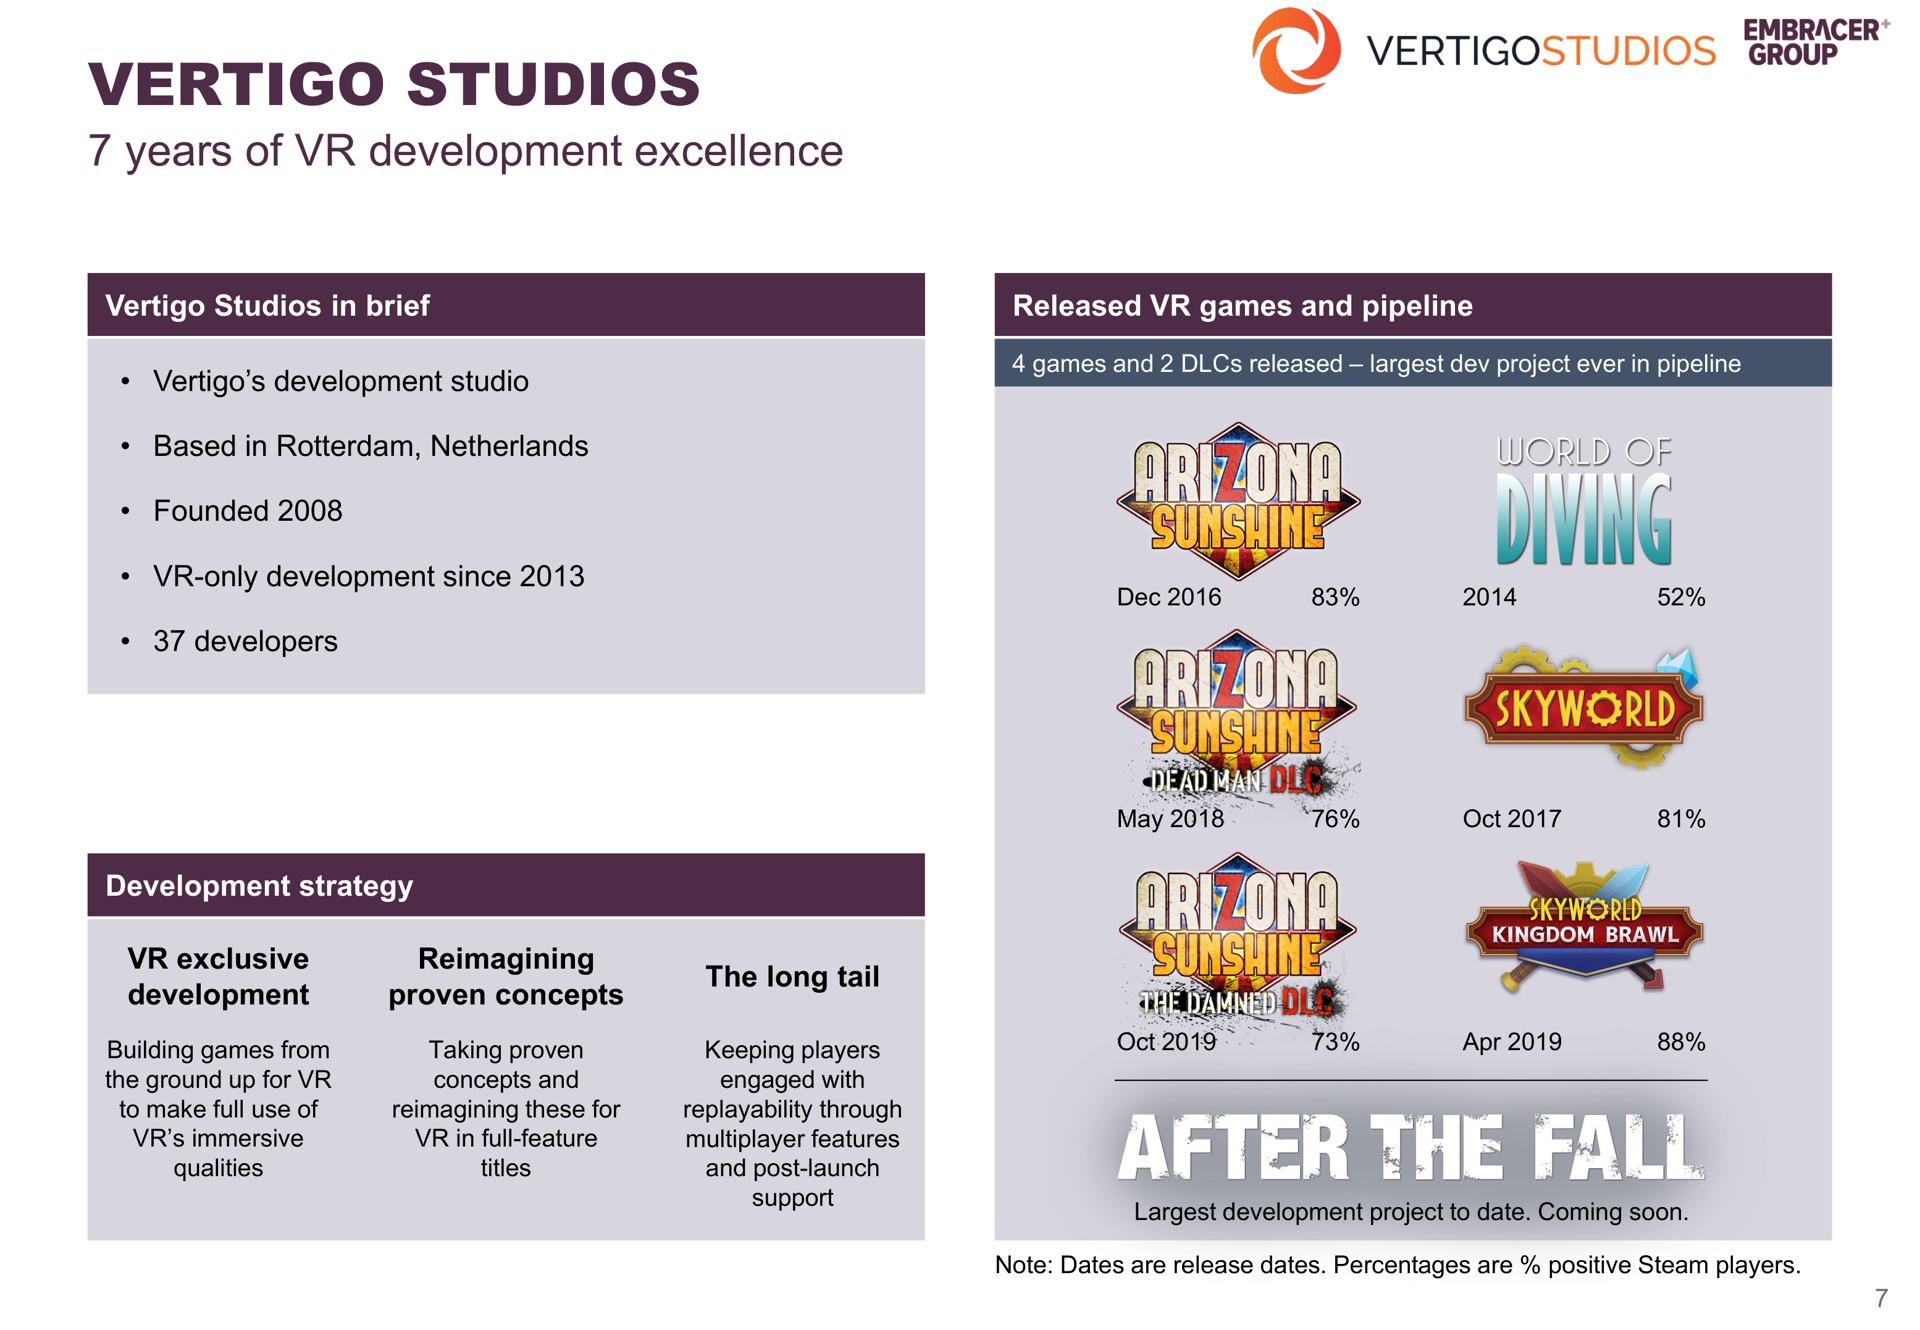 vertigo studios after the fall | Embracer Group